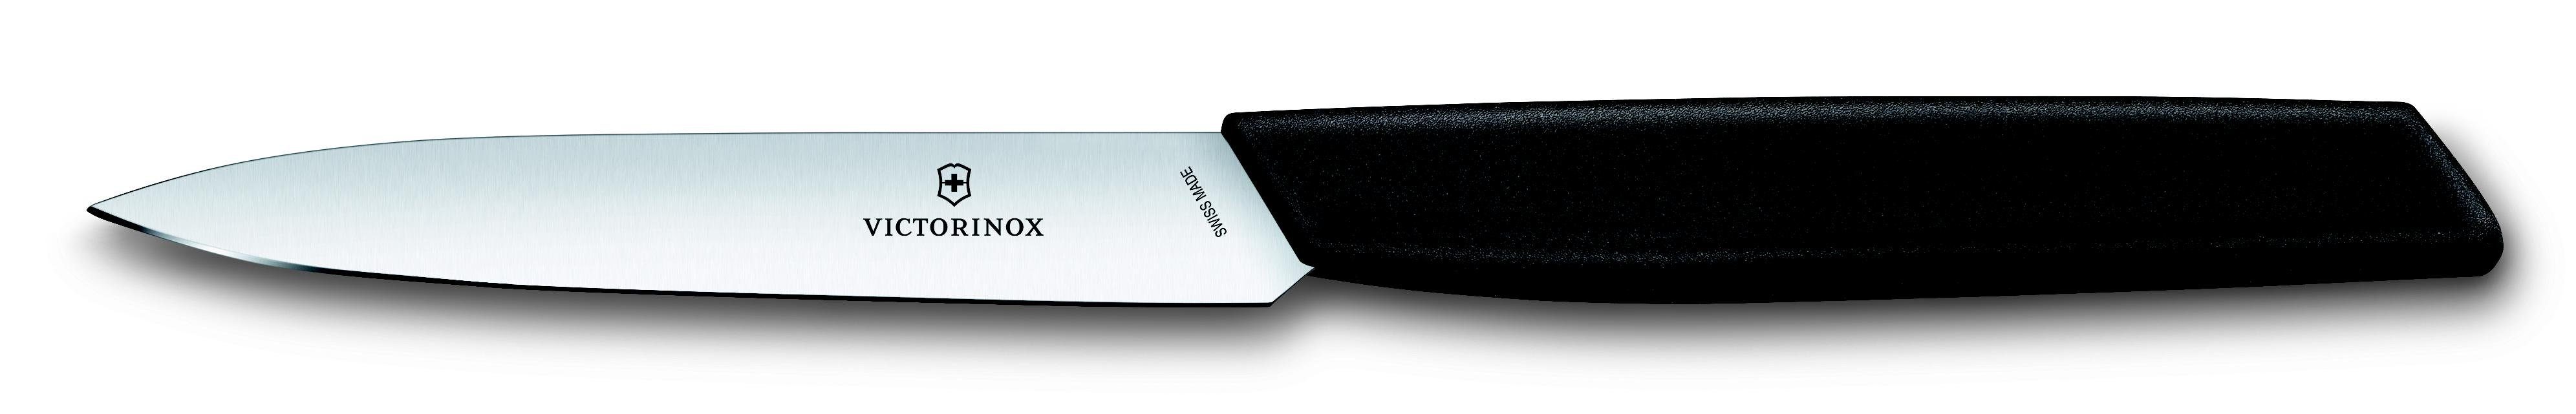 Victorinox Taschenmesser Paring knife, 10 cm, black